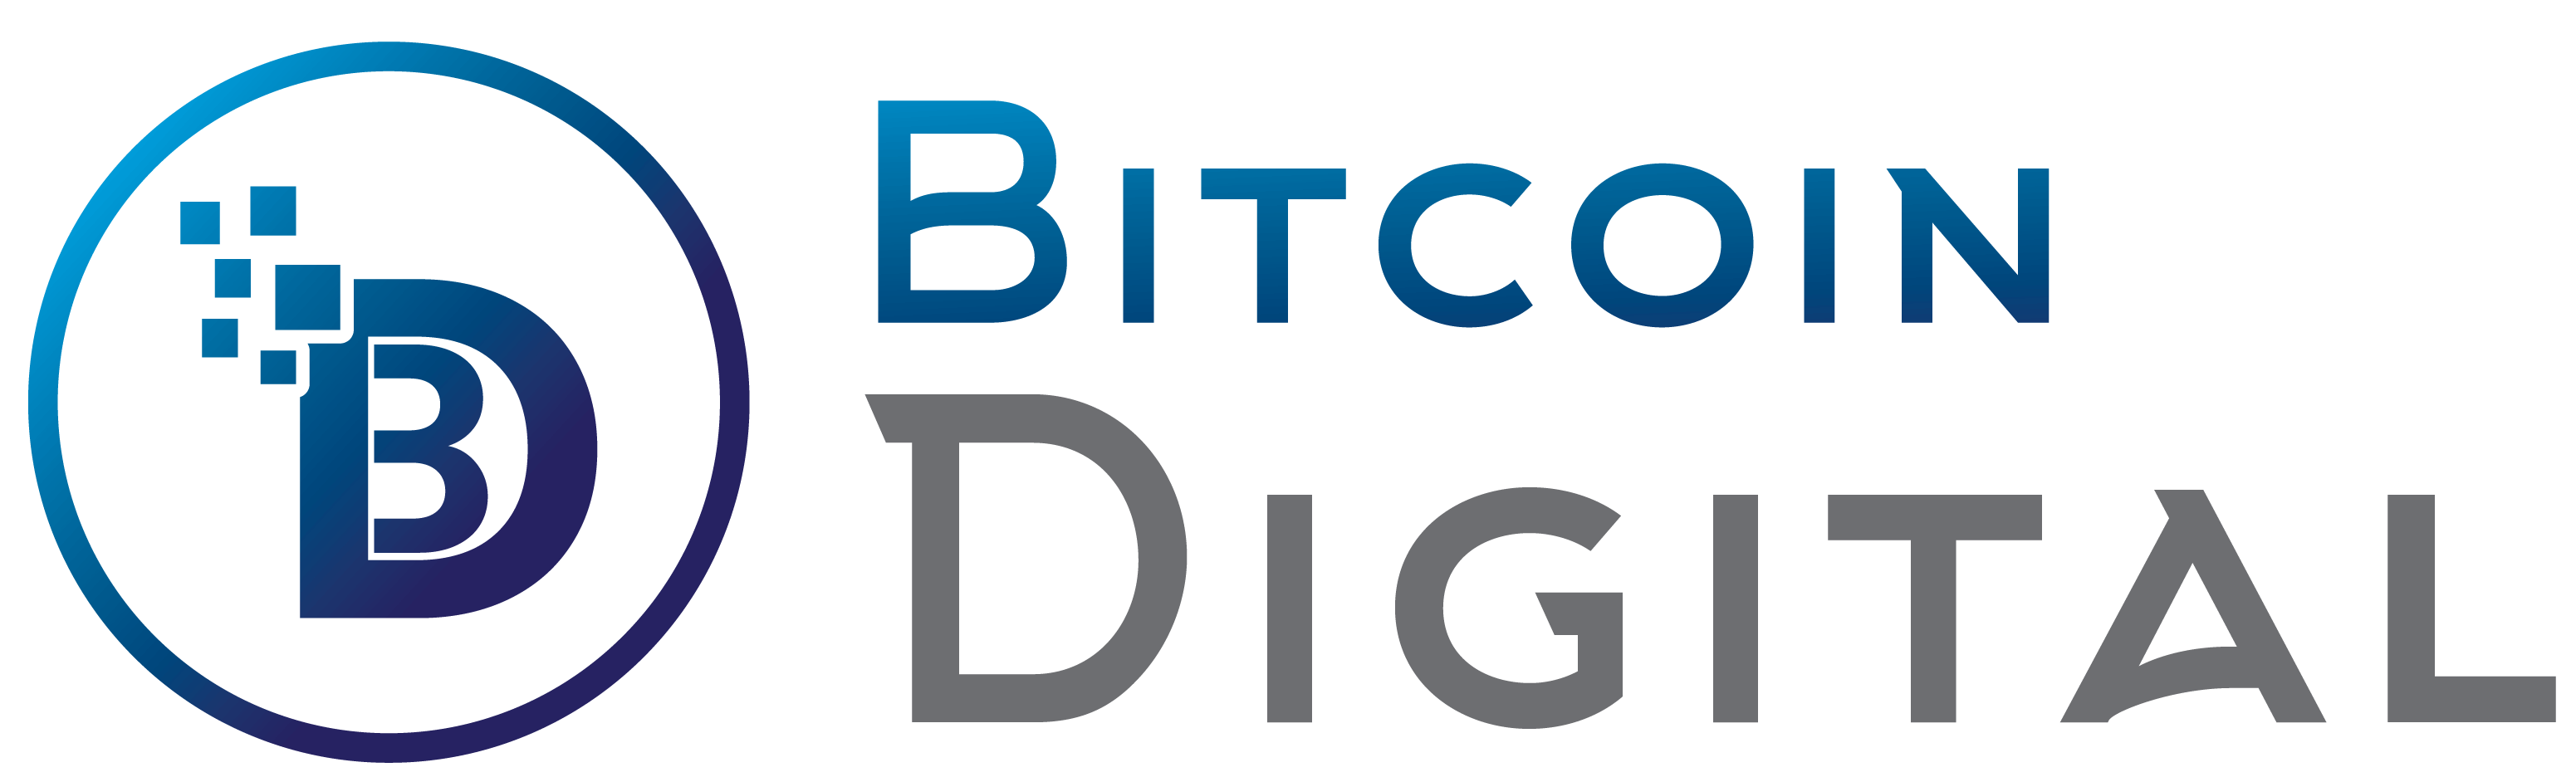 Bitcoin Digital - MAG-SIGN UP NG LIBRE NGAYON